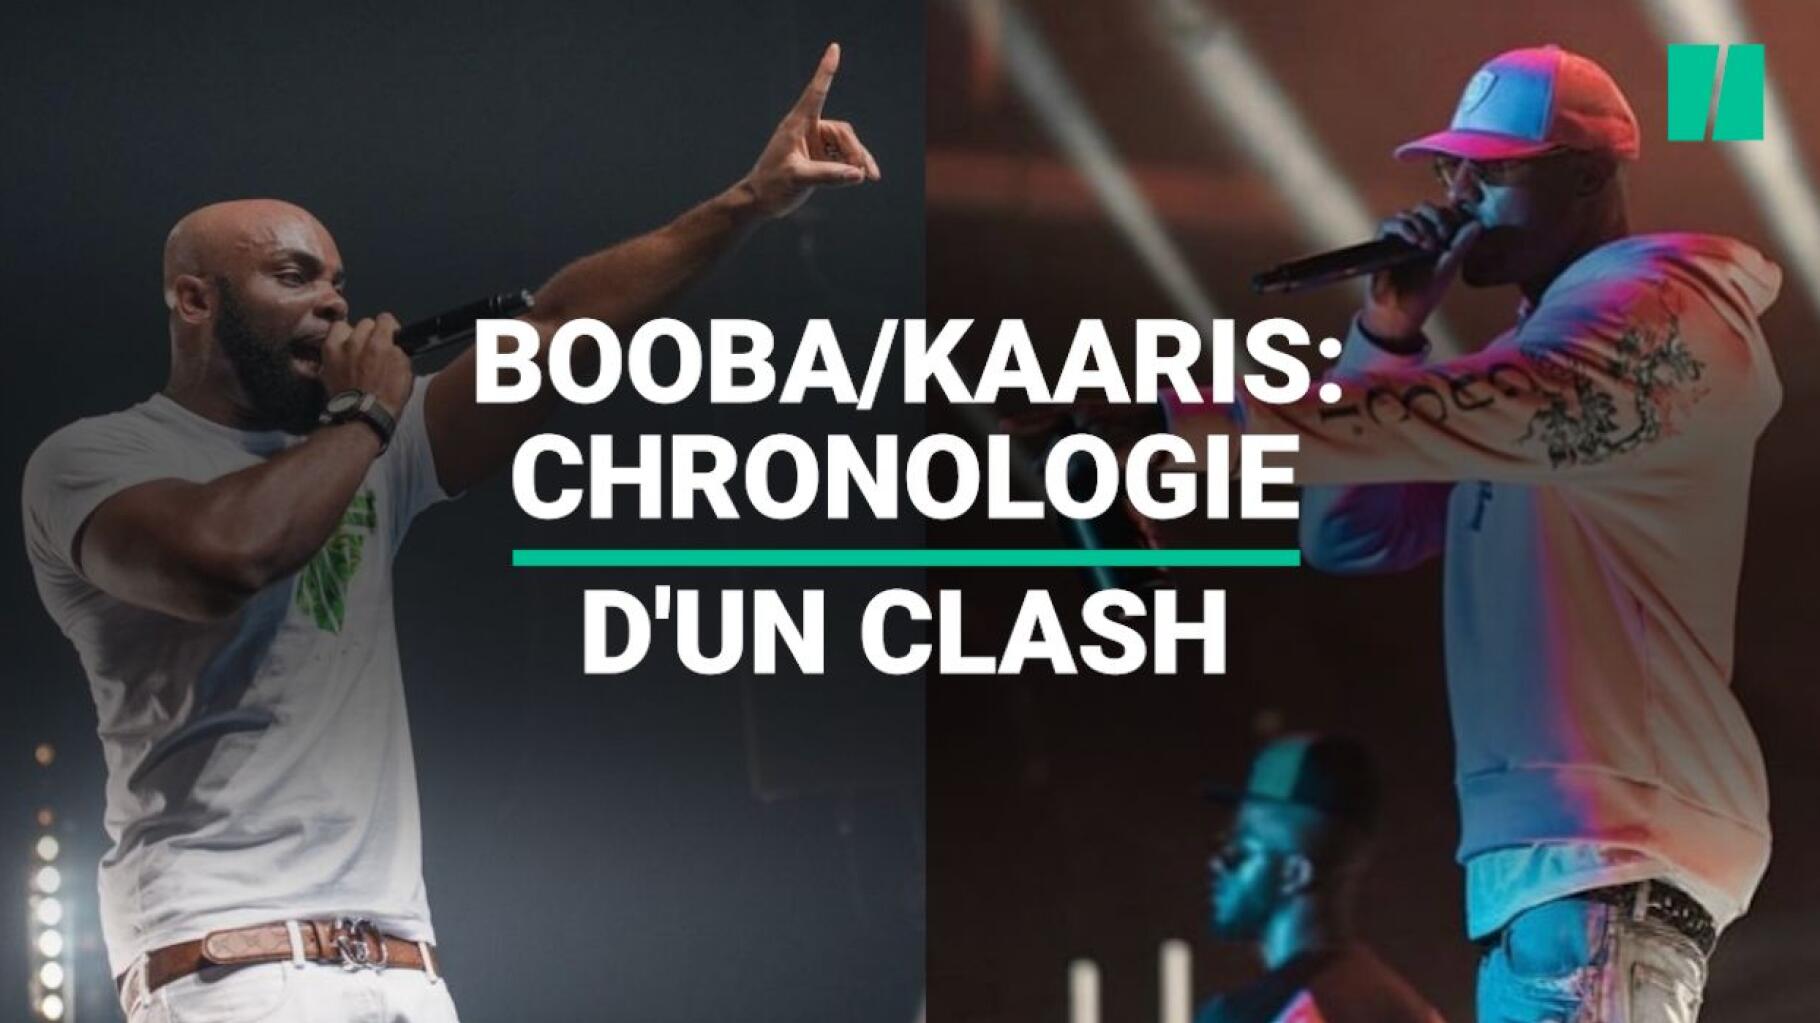 Booba Et Kaaris Se Battent Orly Chronologie D Un Clash